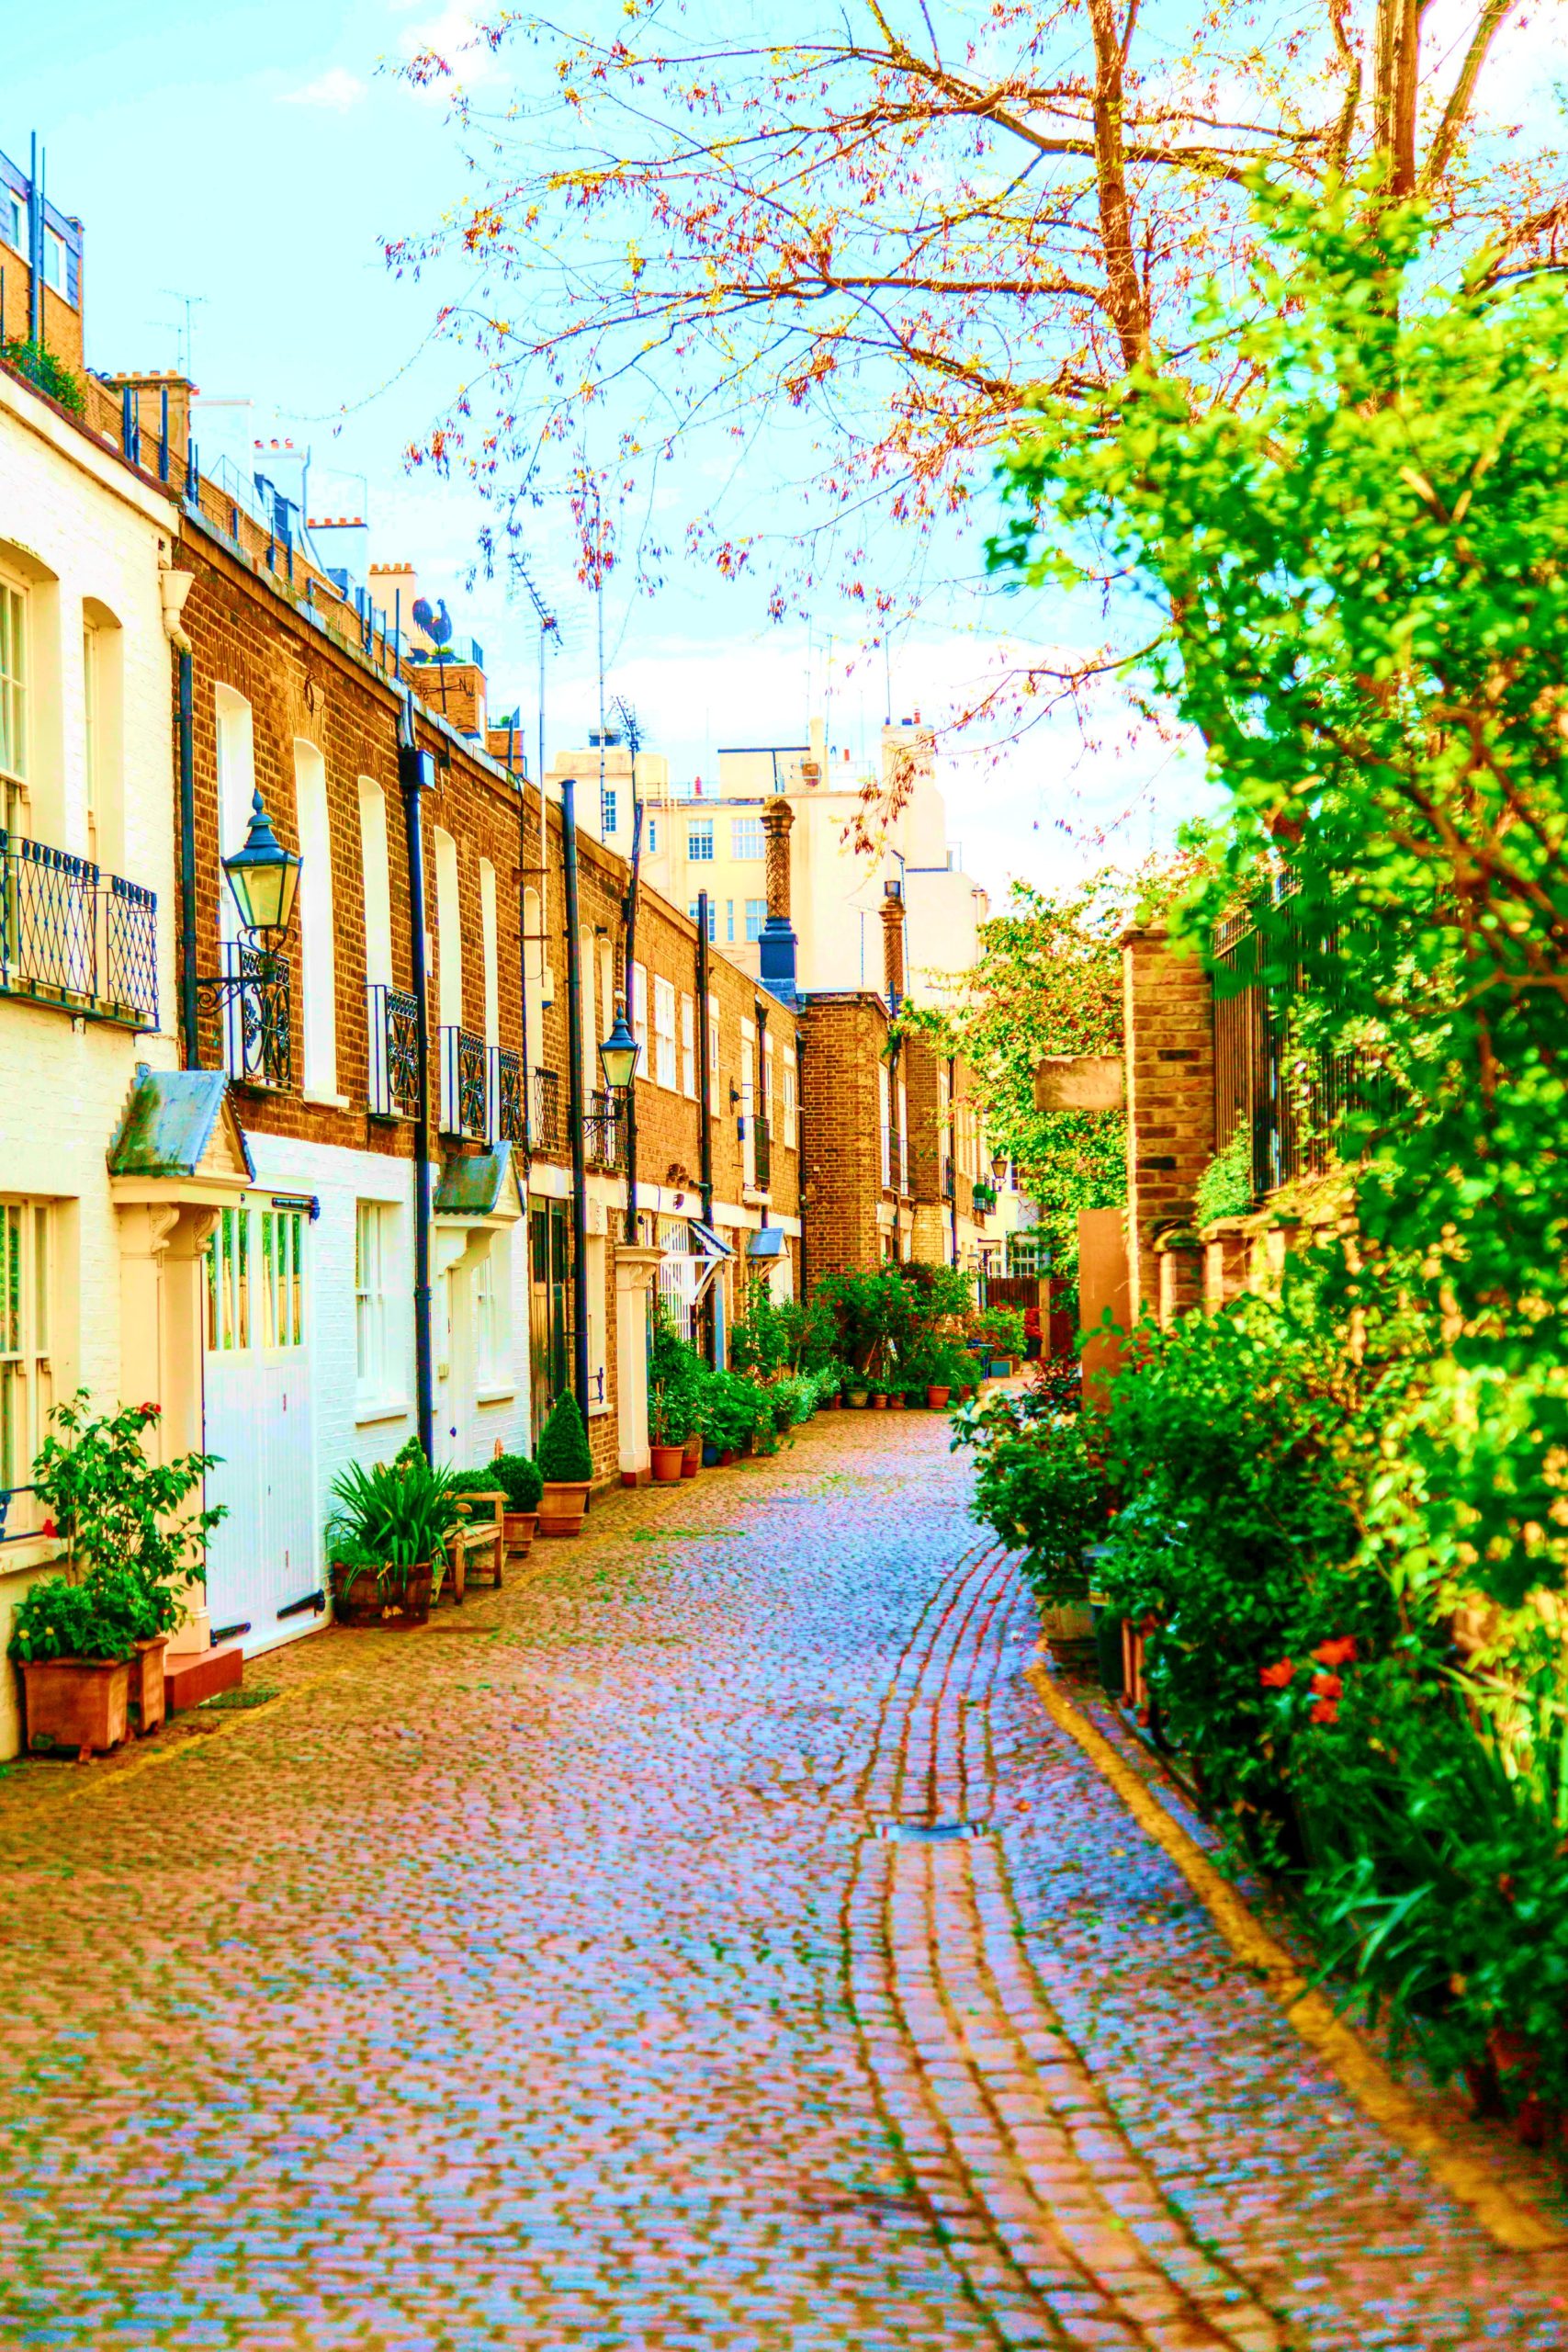 <img src="Notting Hill.jpg" alt="Notting Hill row of houses"/> 